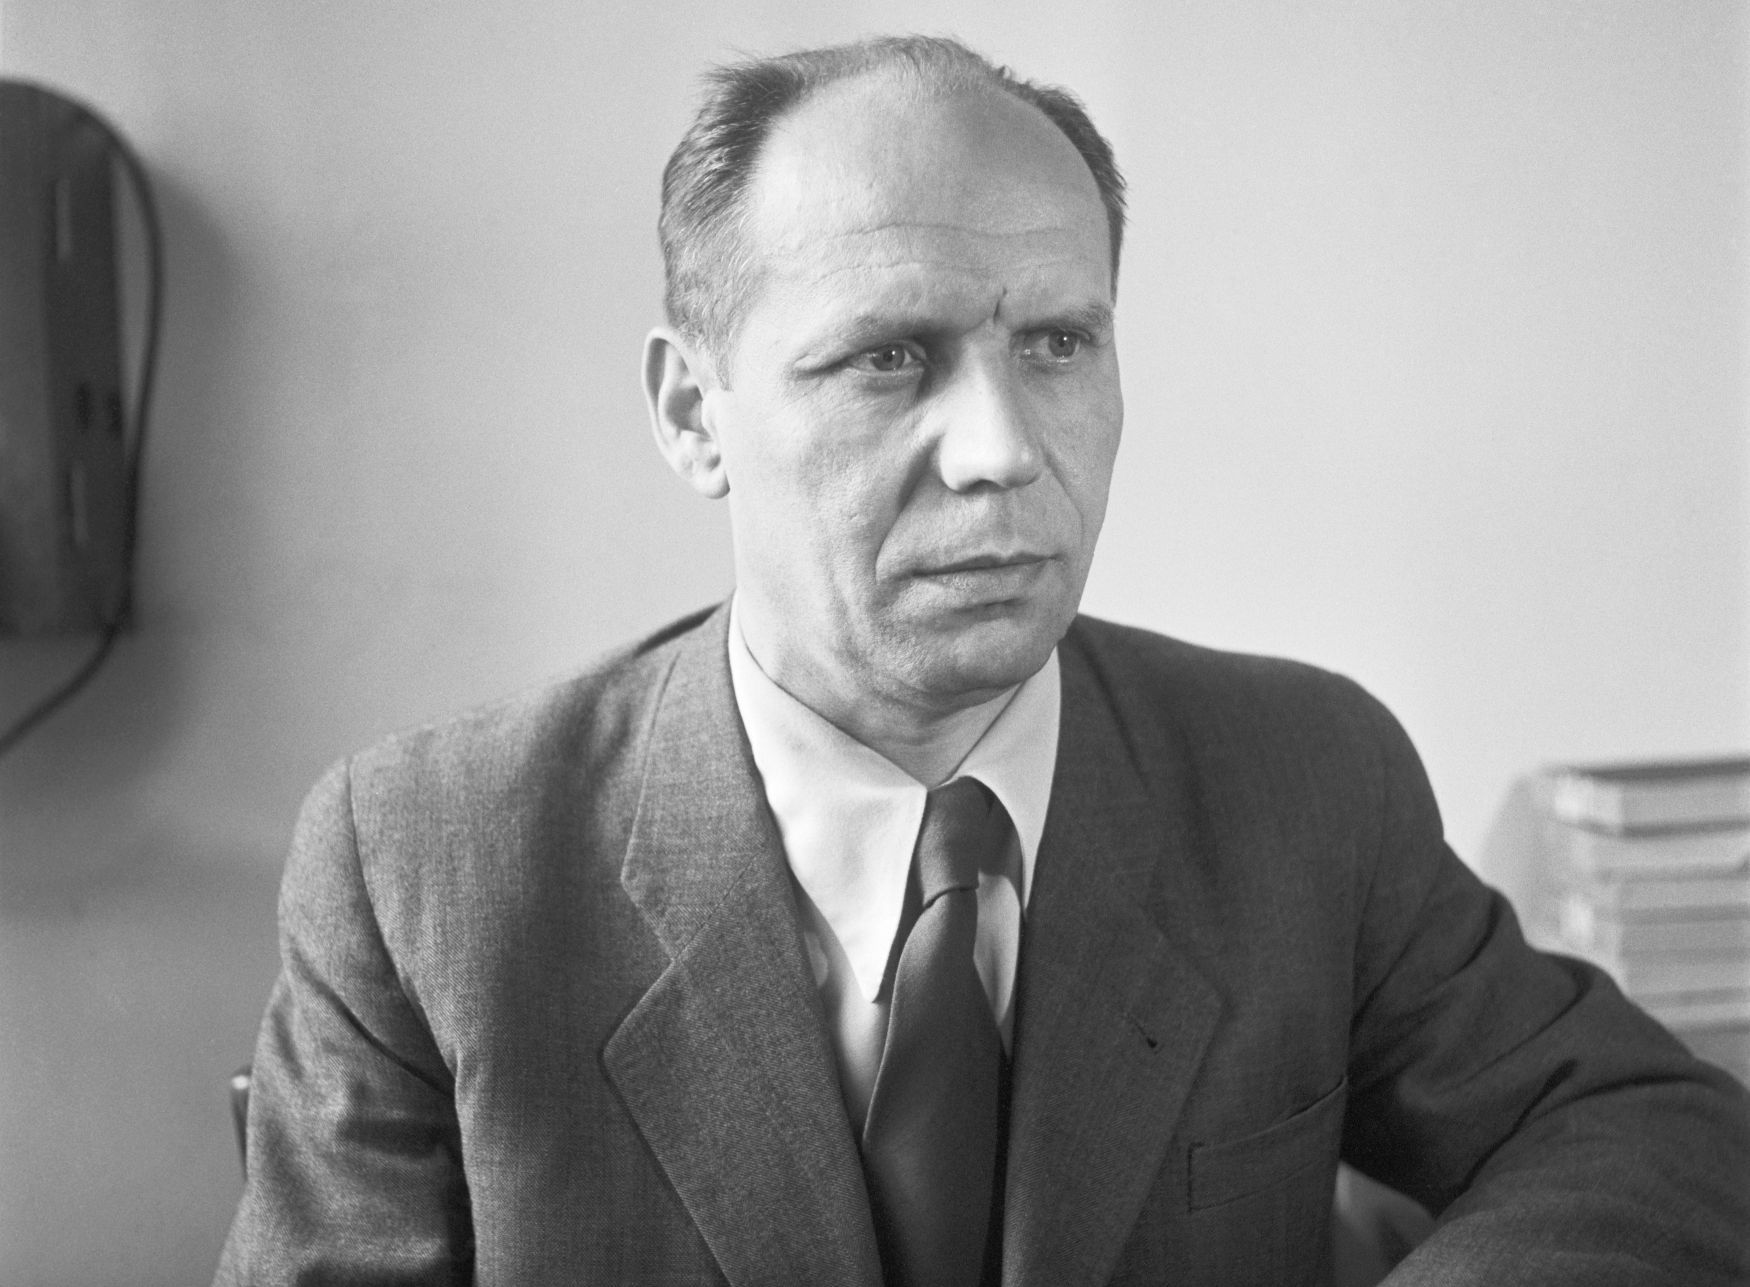 Ladislav Štoll